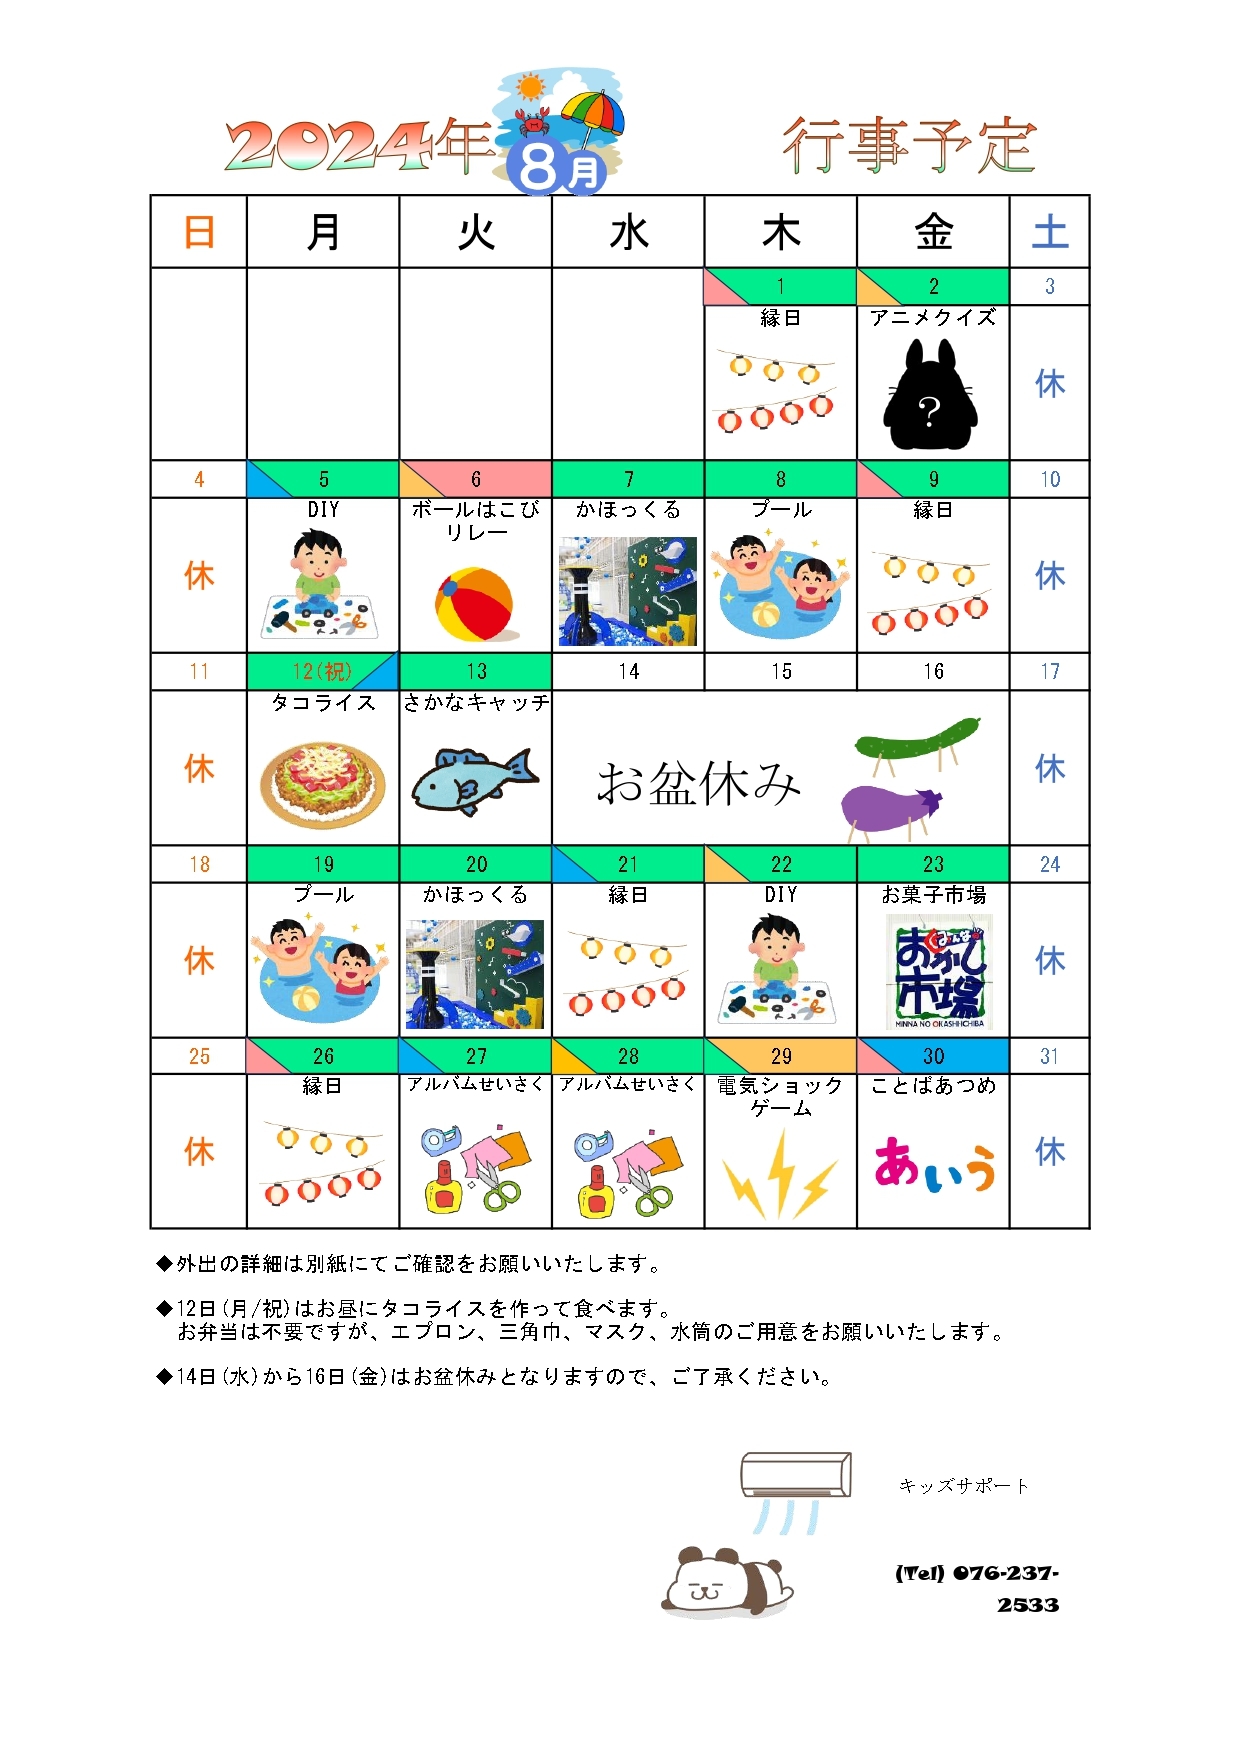 行事カレンダー (1)_page-0001